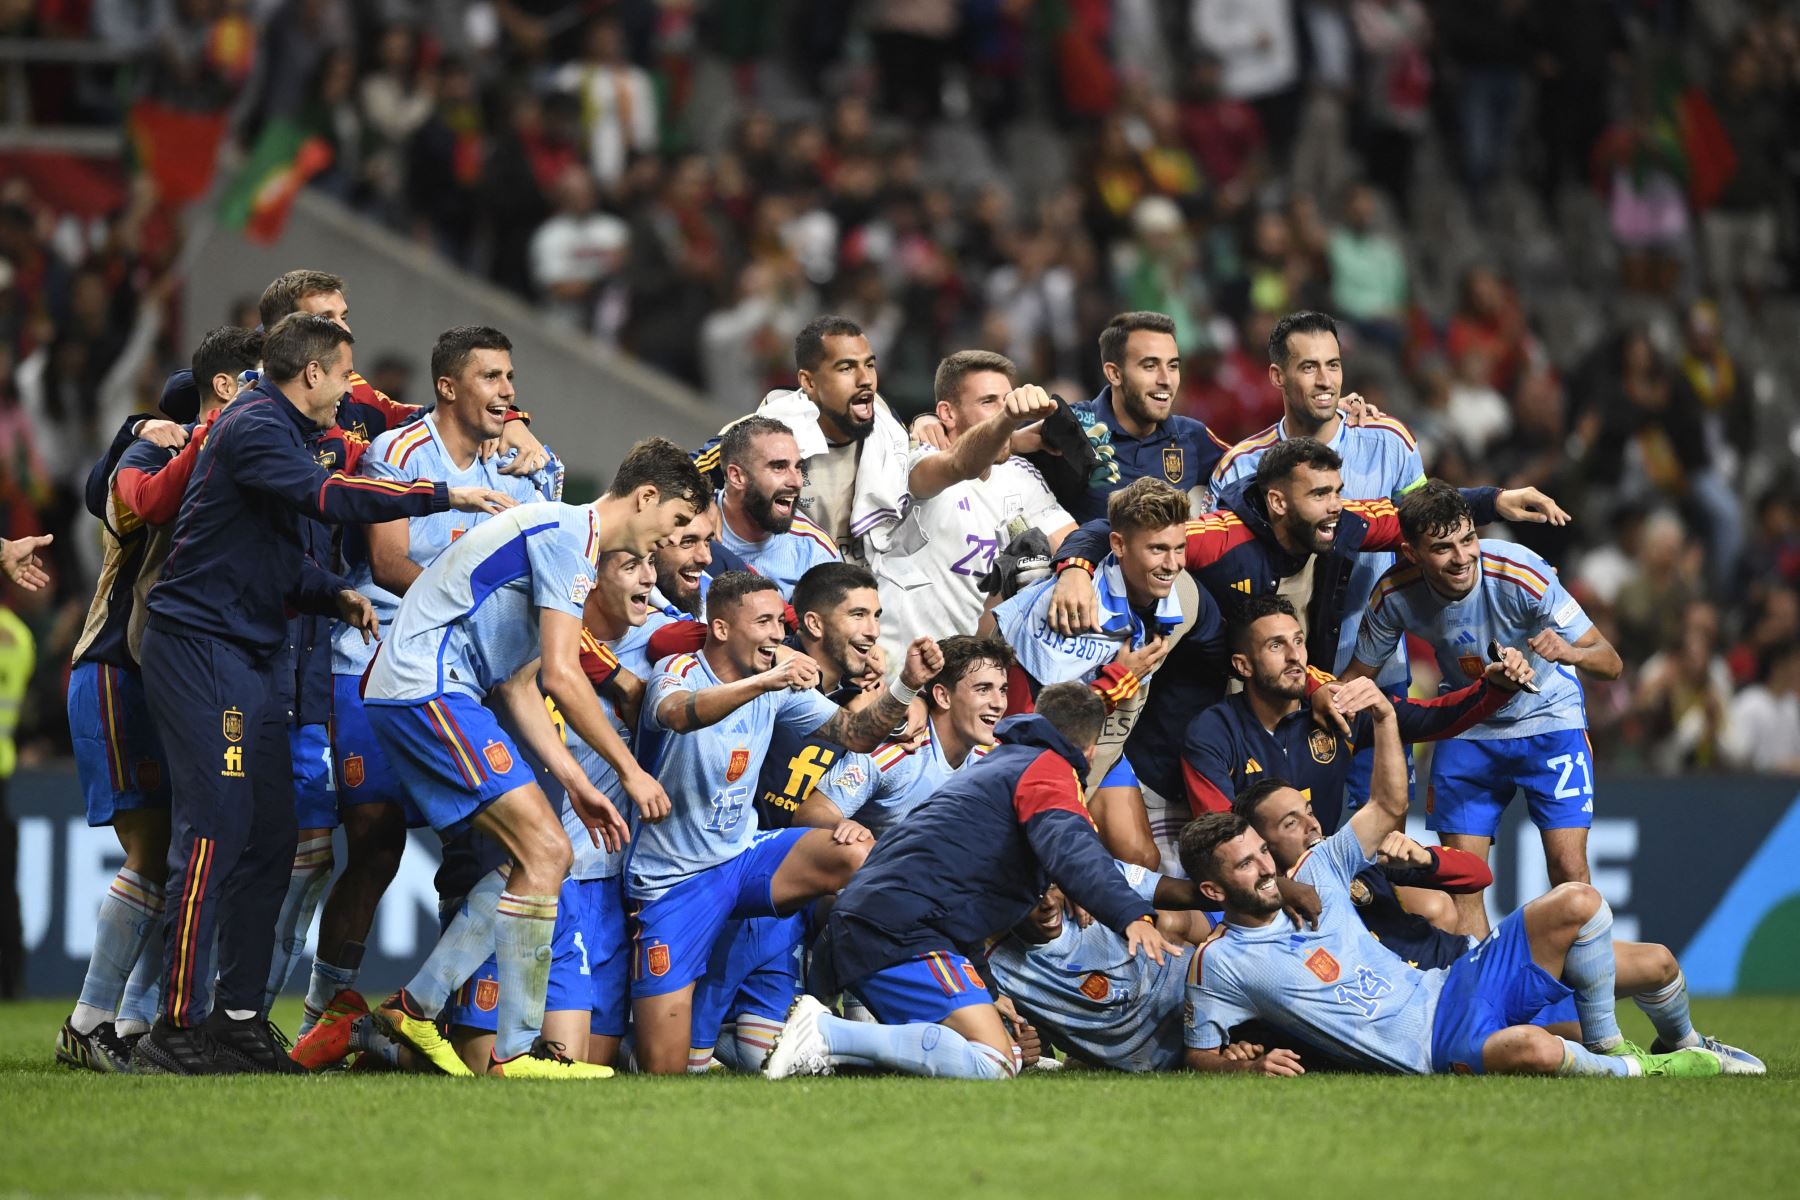 Los jugadores españoles celebran después de ganar el partido de fútbol del grupo 2 de la Liga de Naciones de la UEFA, liga A, entre Portugal y España, en el Estadio Municipal de Braga.
Foto: AFP